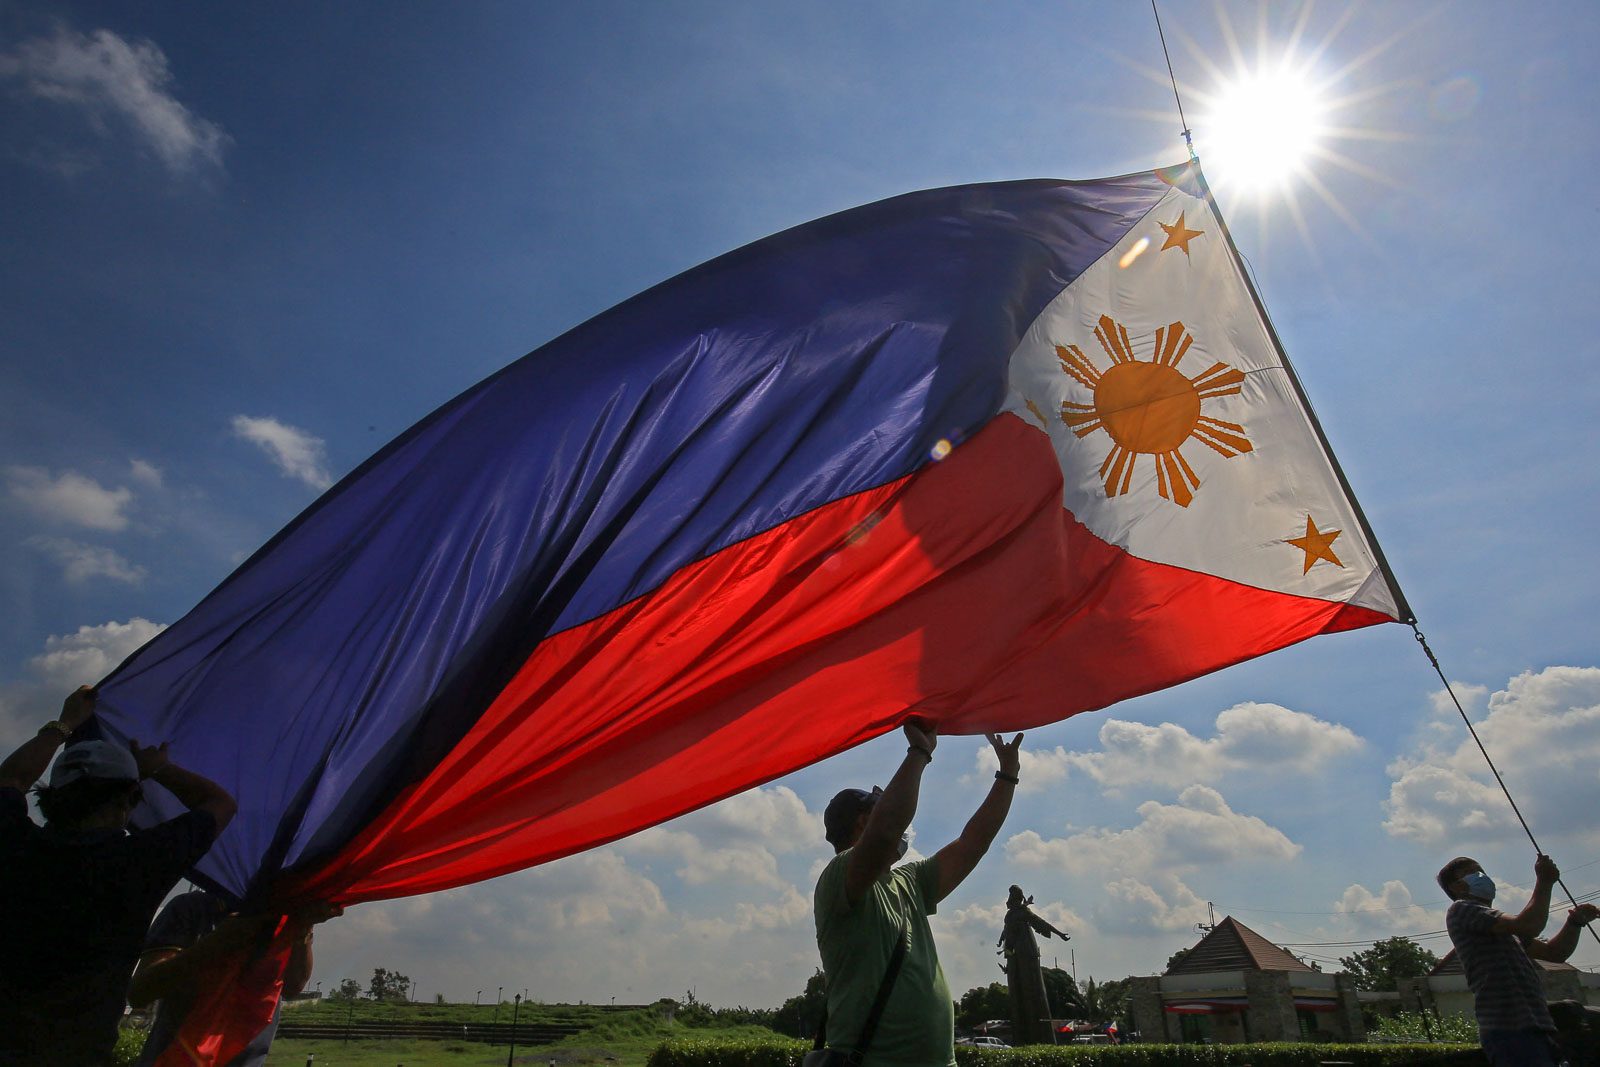 filipino national heroes